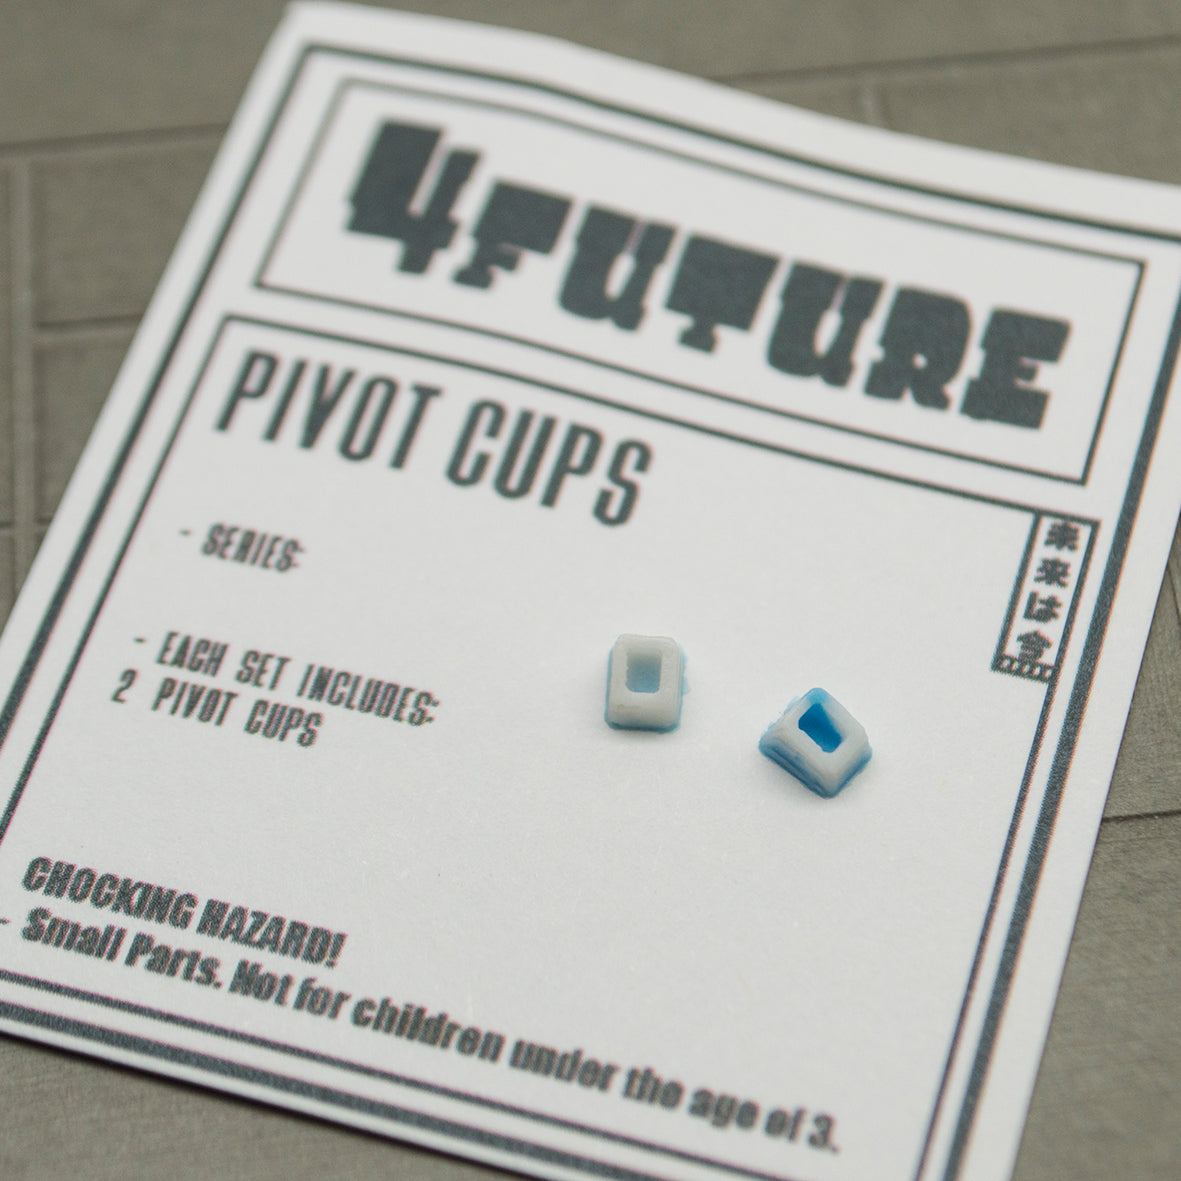 4Future Pivot Cup (for Blackriver)